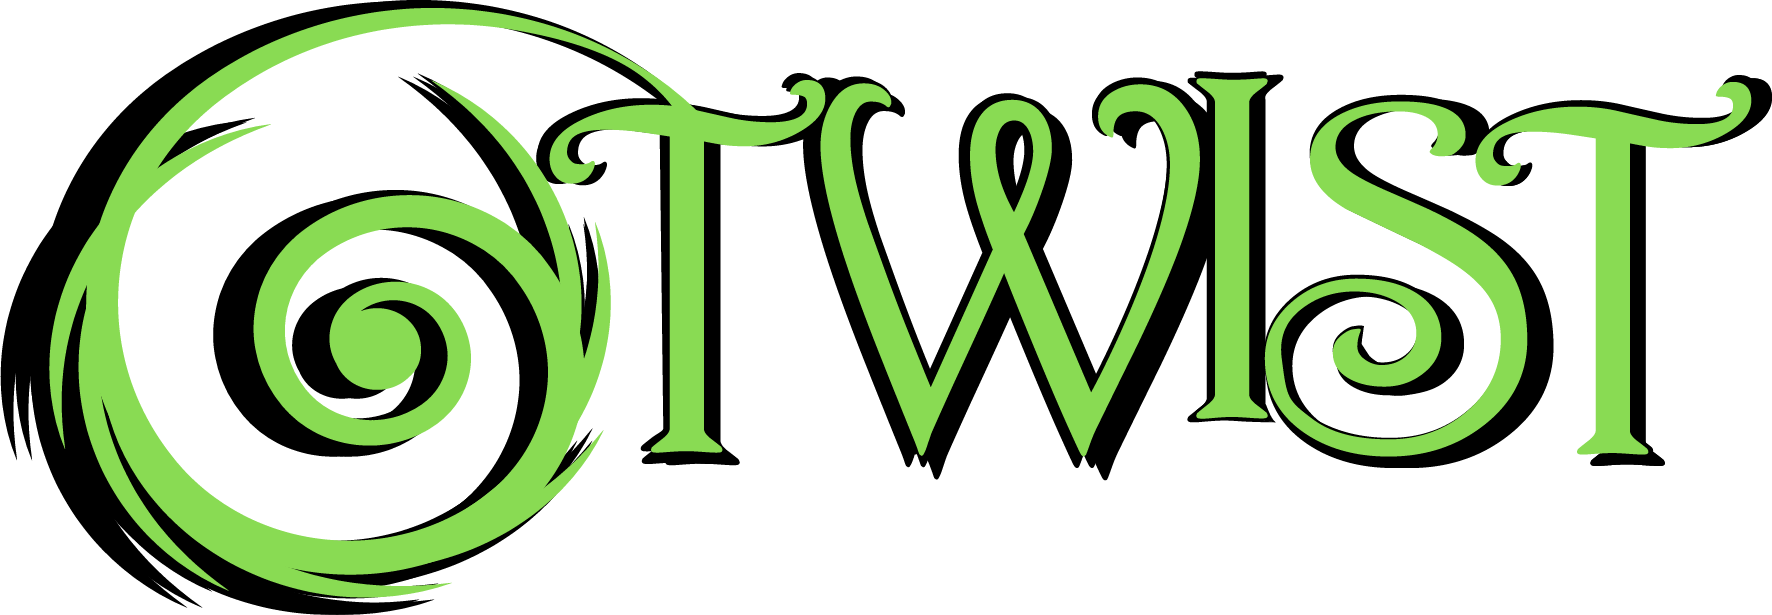 Logo del Tween Insight Search Team creado por Iris Petty